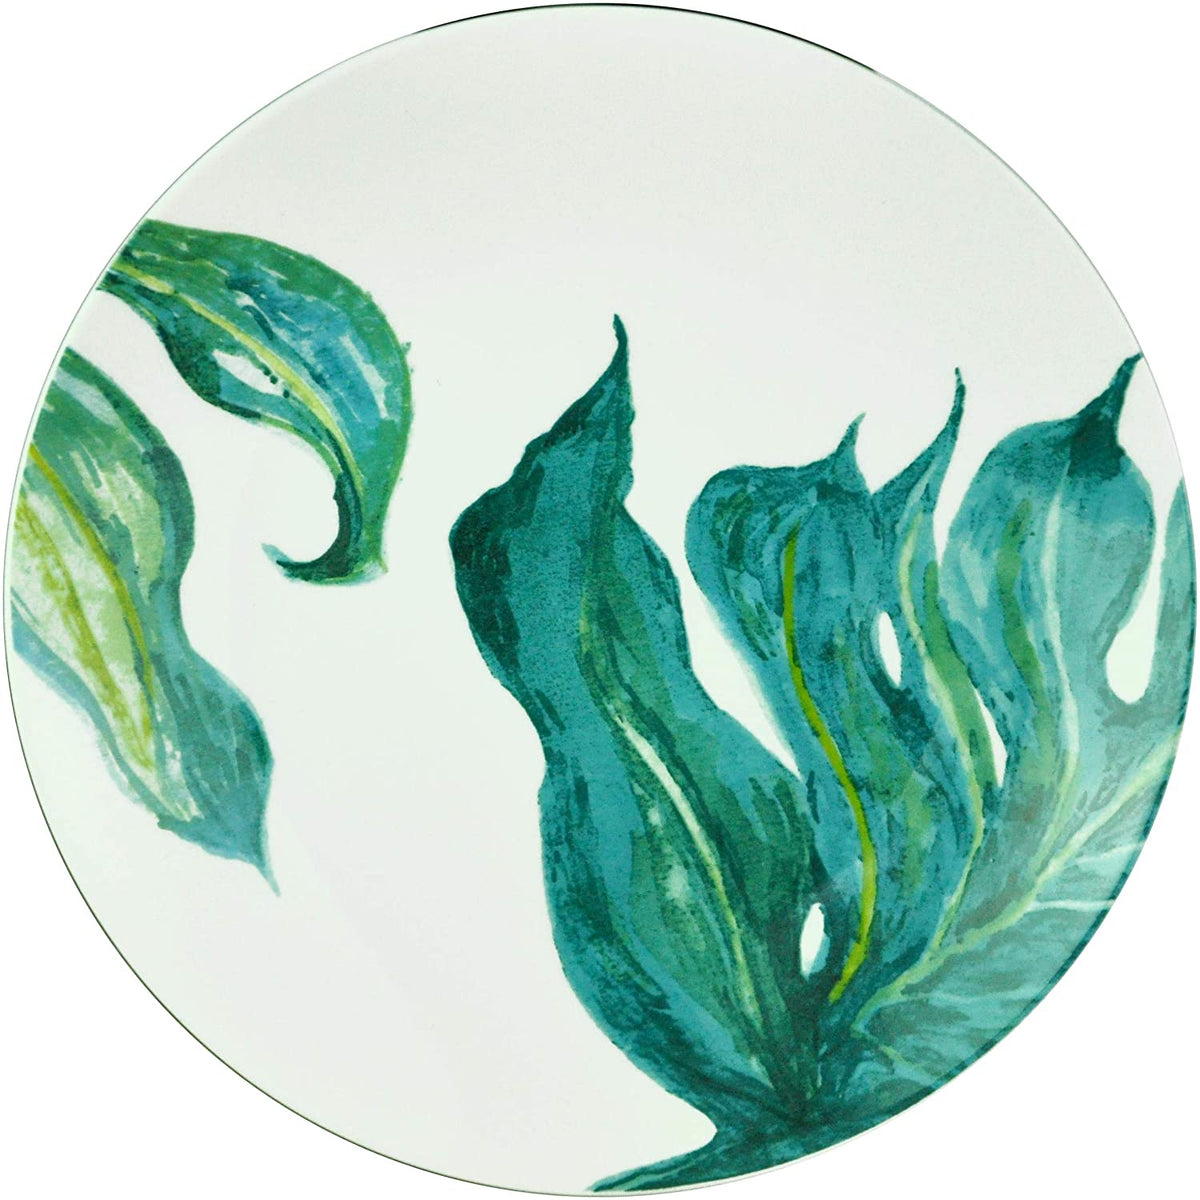 Porzellan Speiseteller Ø27 cm mit orientalischen Blattmotiven Design Green Love im 4er Set